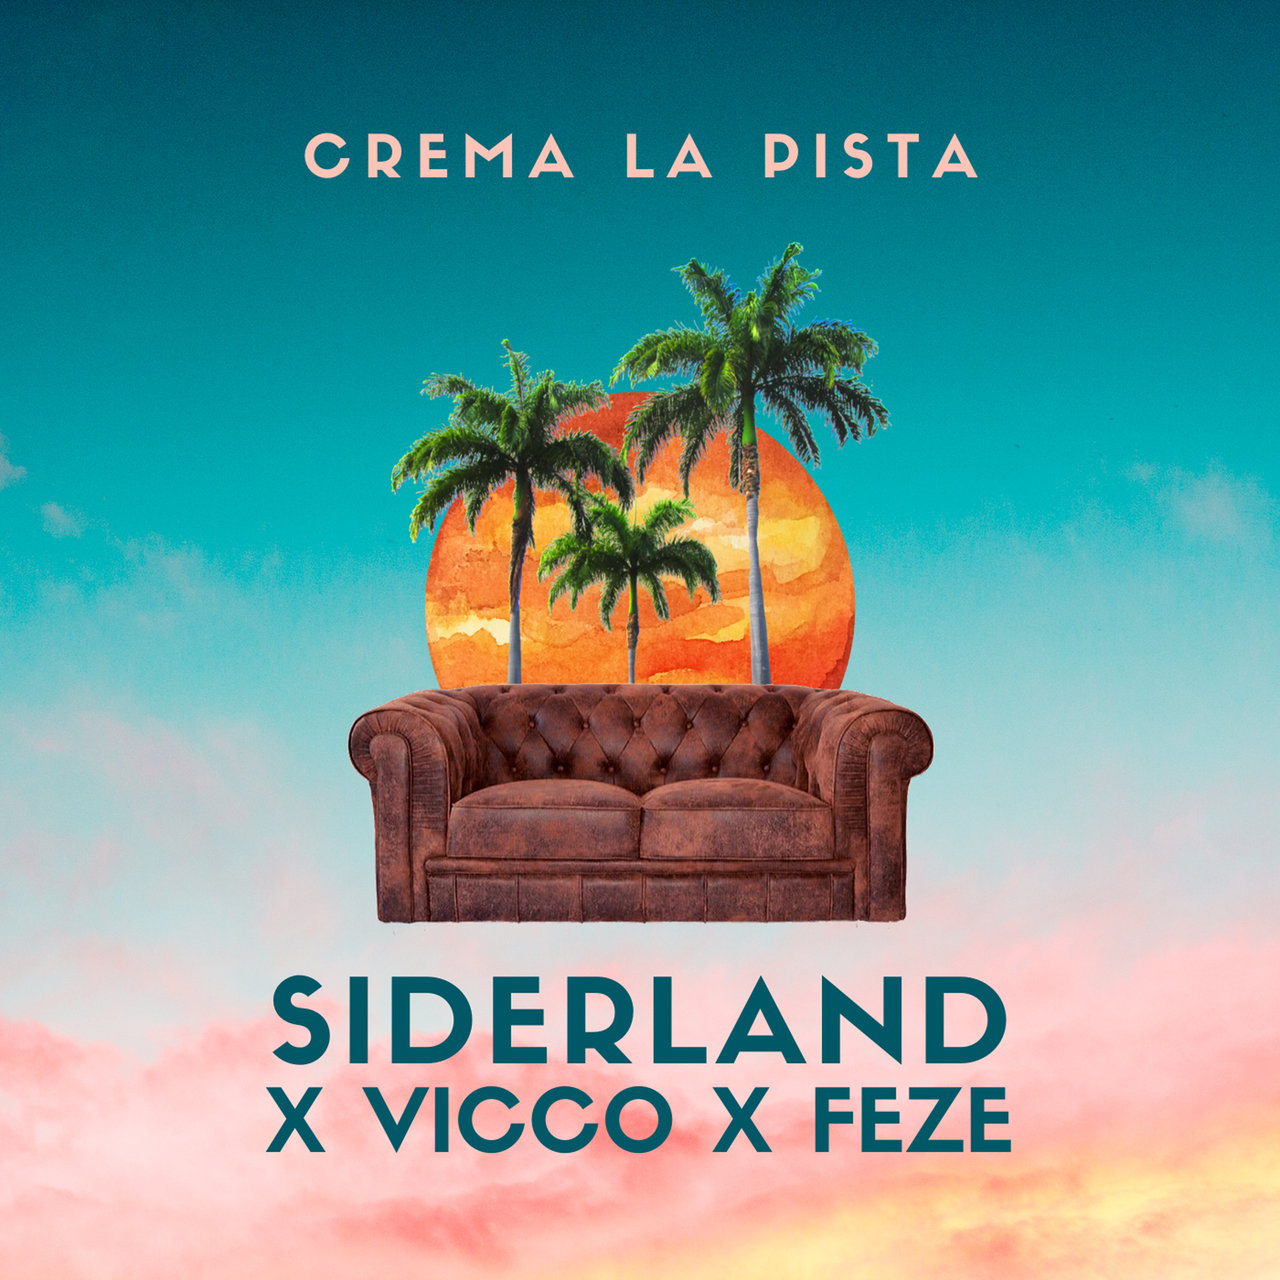 Siderland featuring Vicco & Feze — Crema La Pista cover artwork